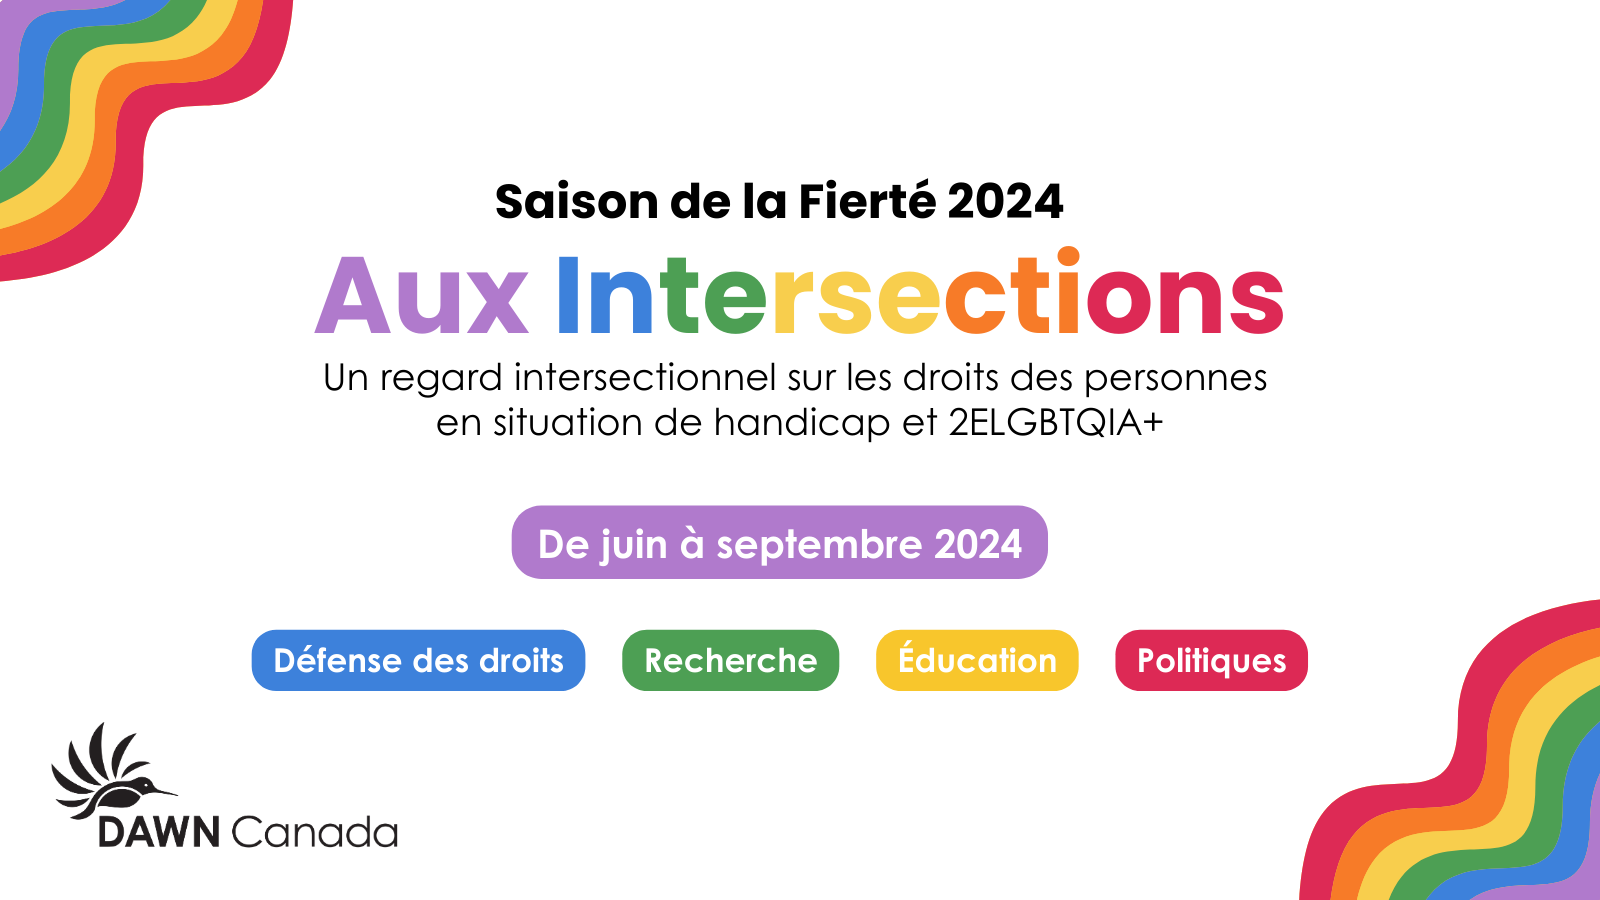 Saison de la Fierté 2024 - Campagne Aux Intersections